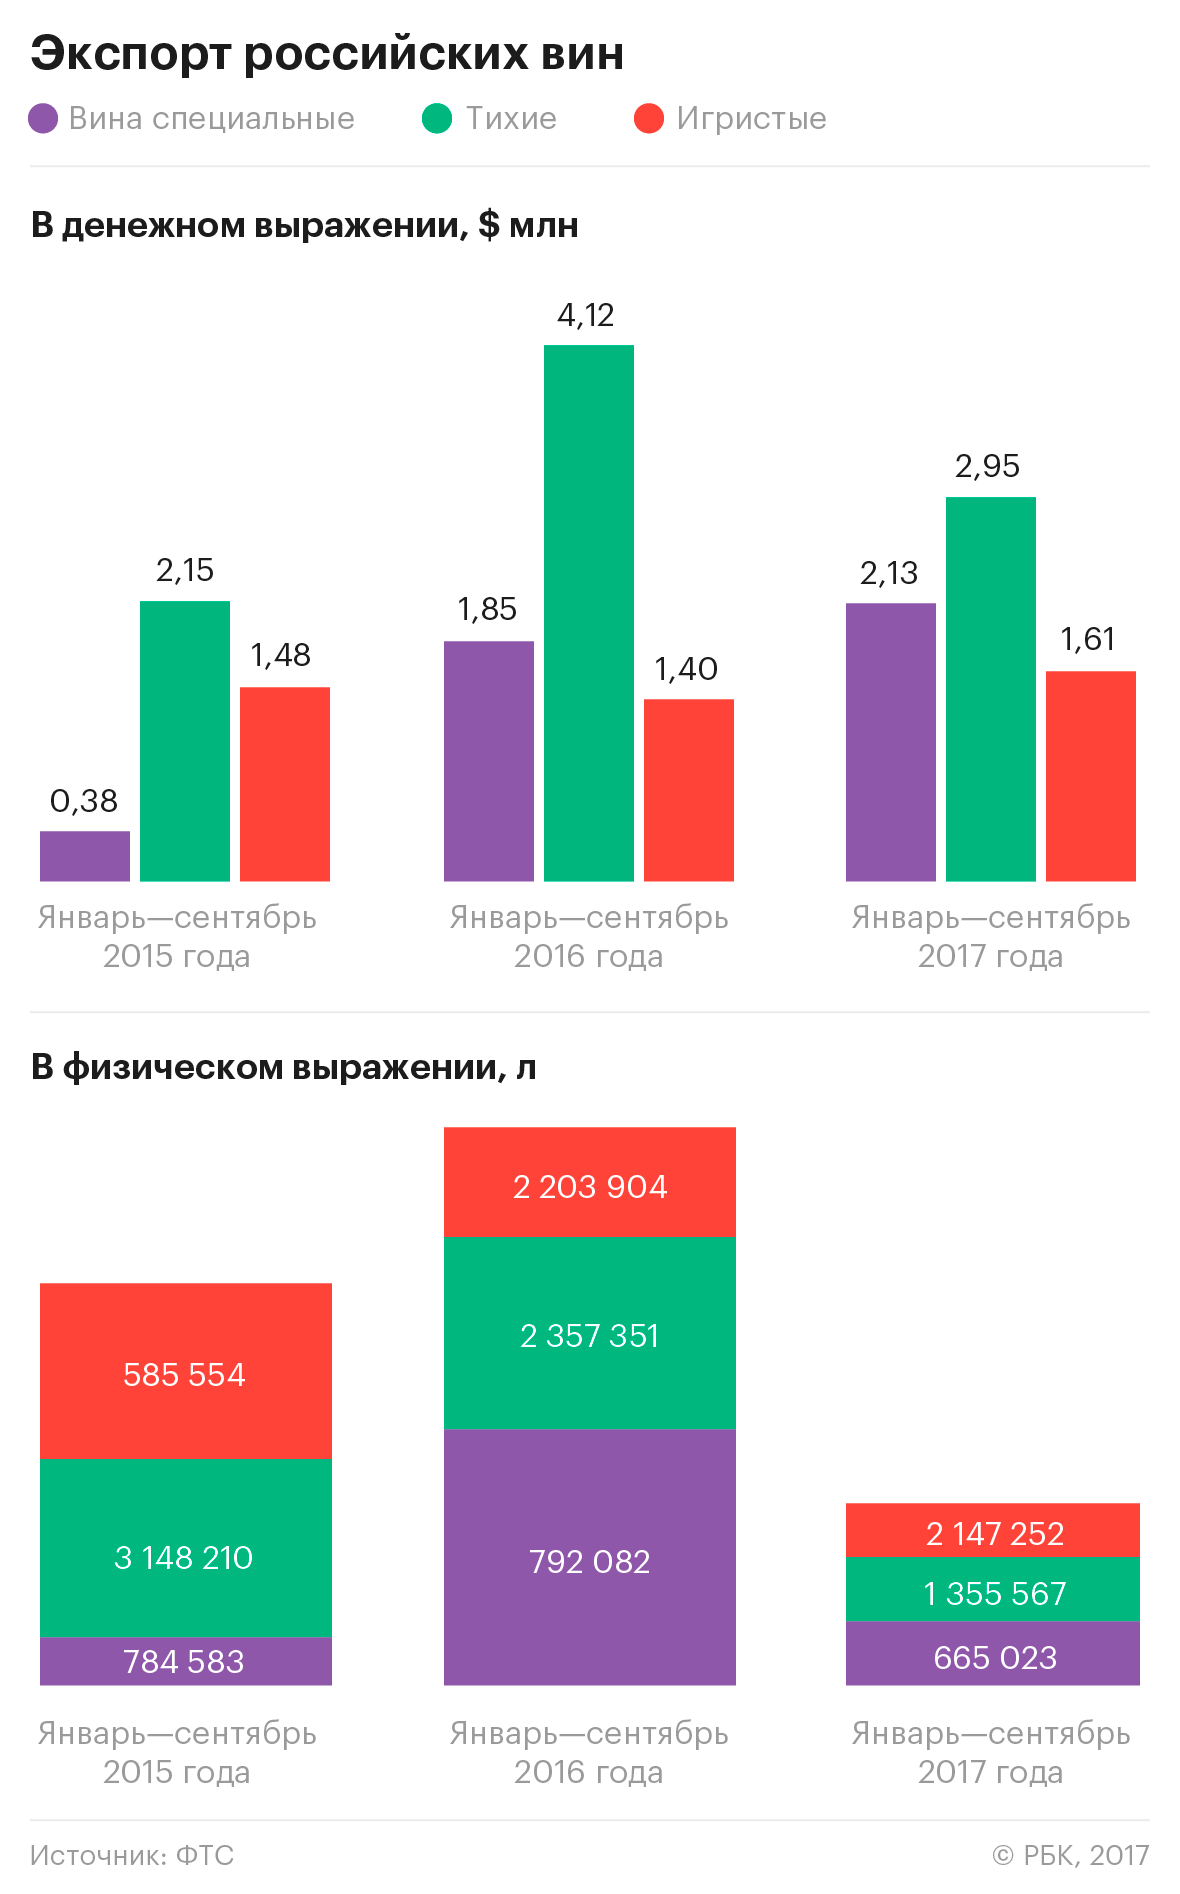 Экспорт российского вина резко упал в 2017 году